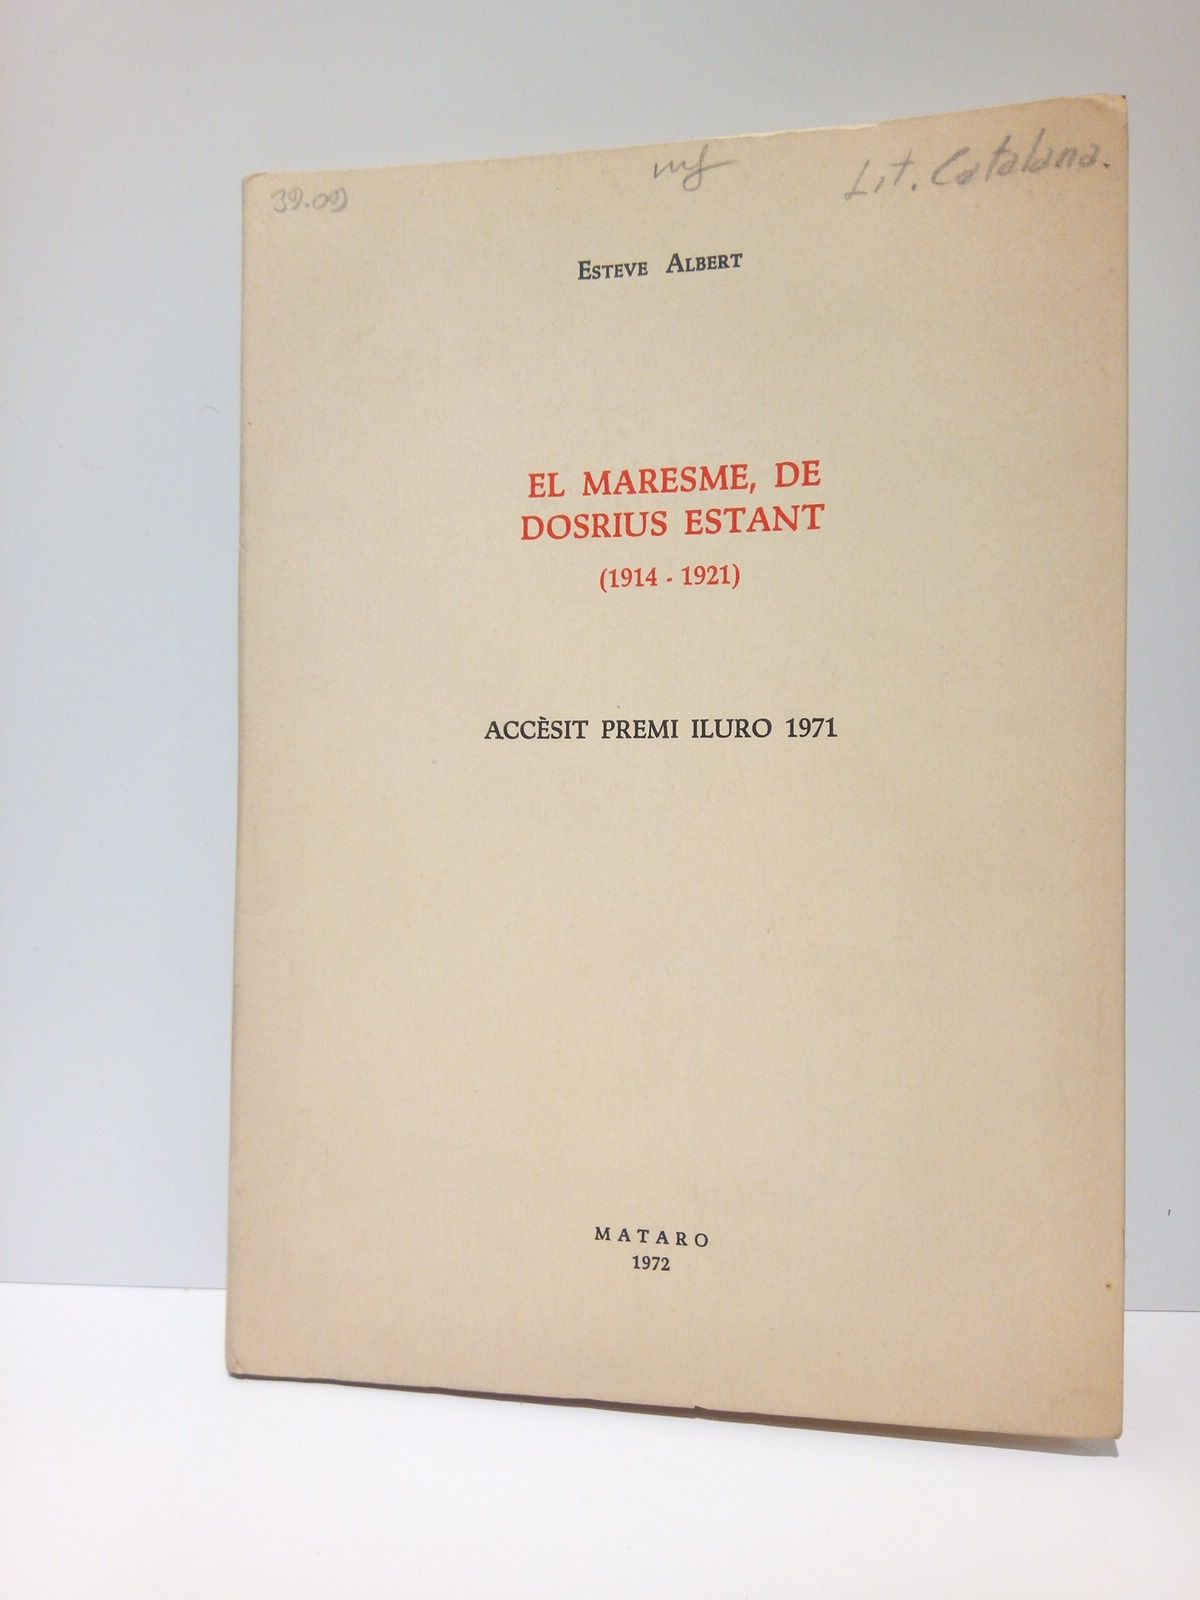 ALBERT, Esteve - El Maresme, de Dosrius Estant. 1914-1921. (Accsit Premi Iluro 1971)